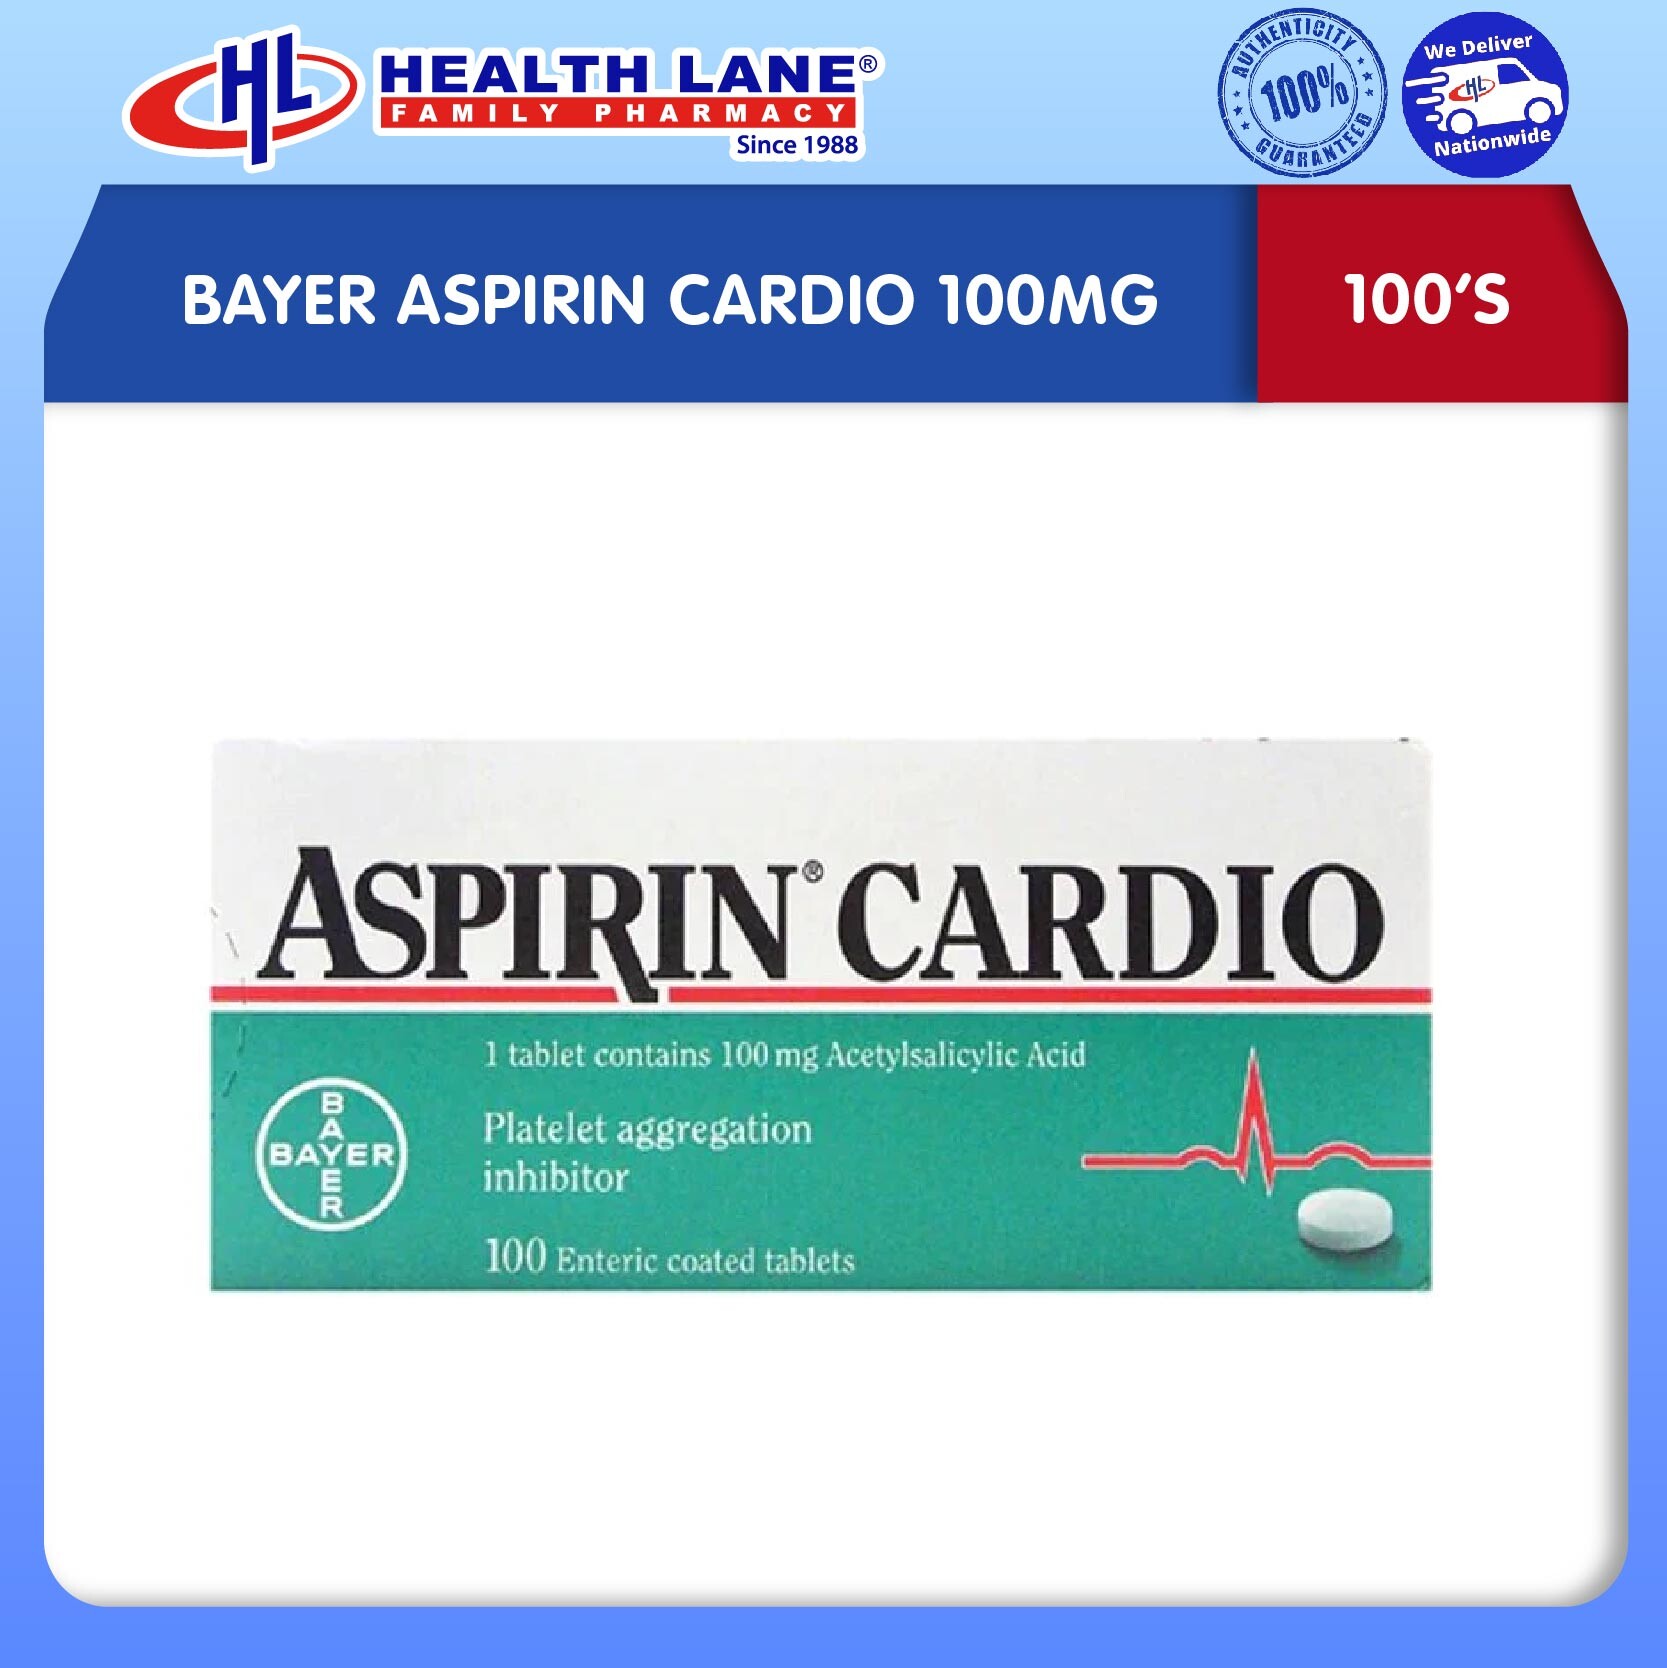 BAYER ASPIRIN CARDIO 100MG (100'S)